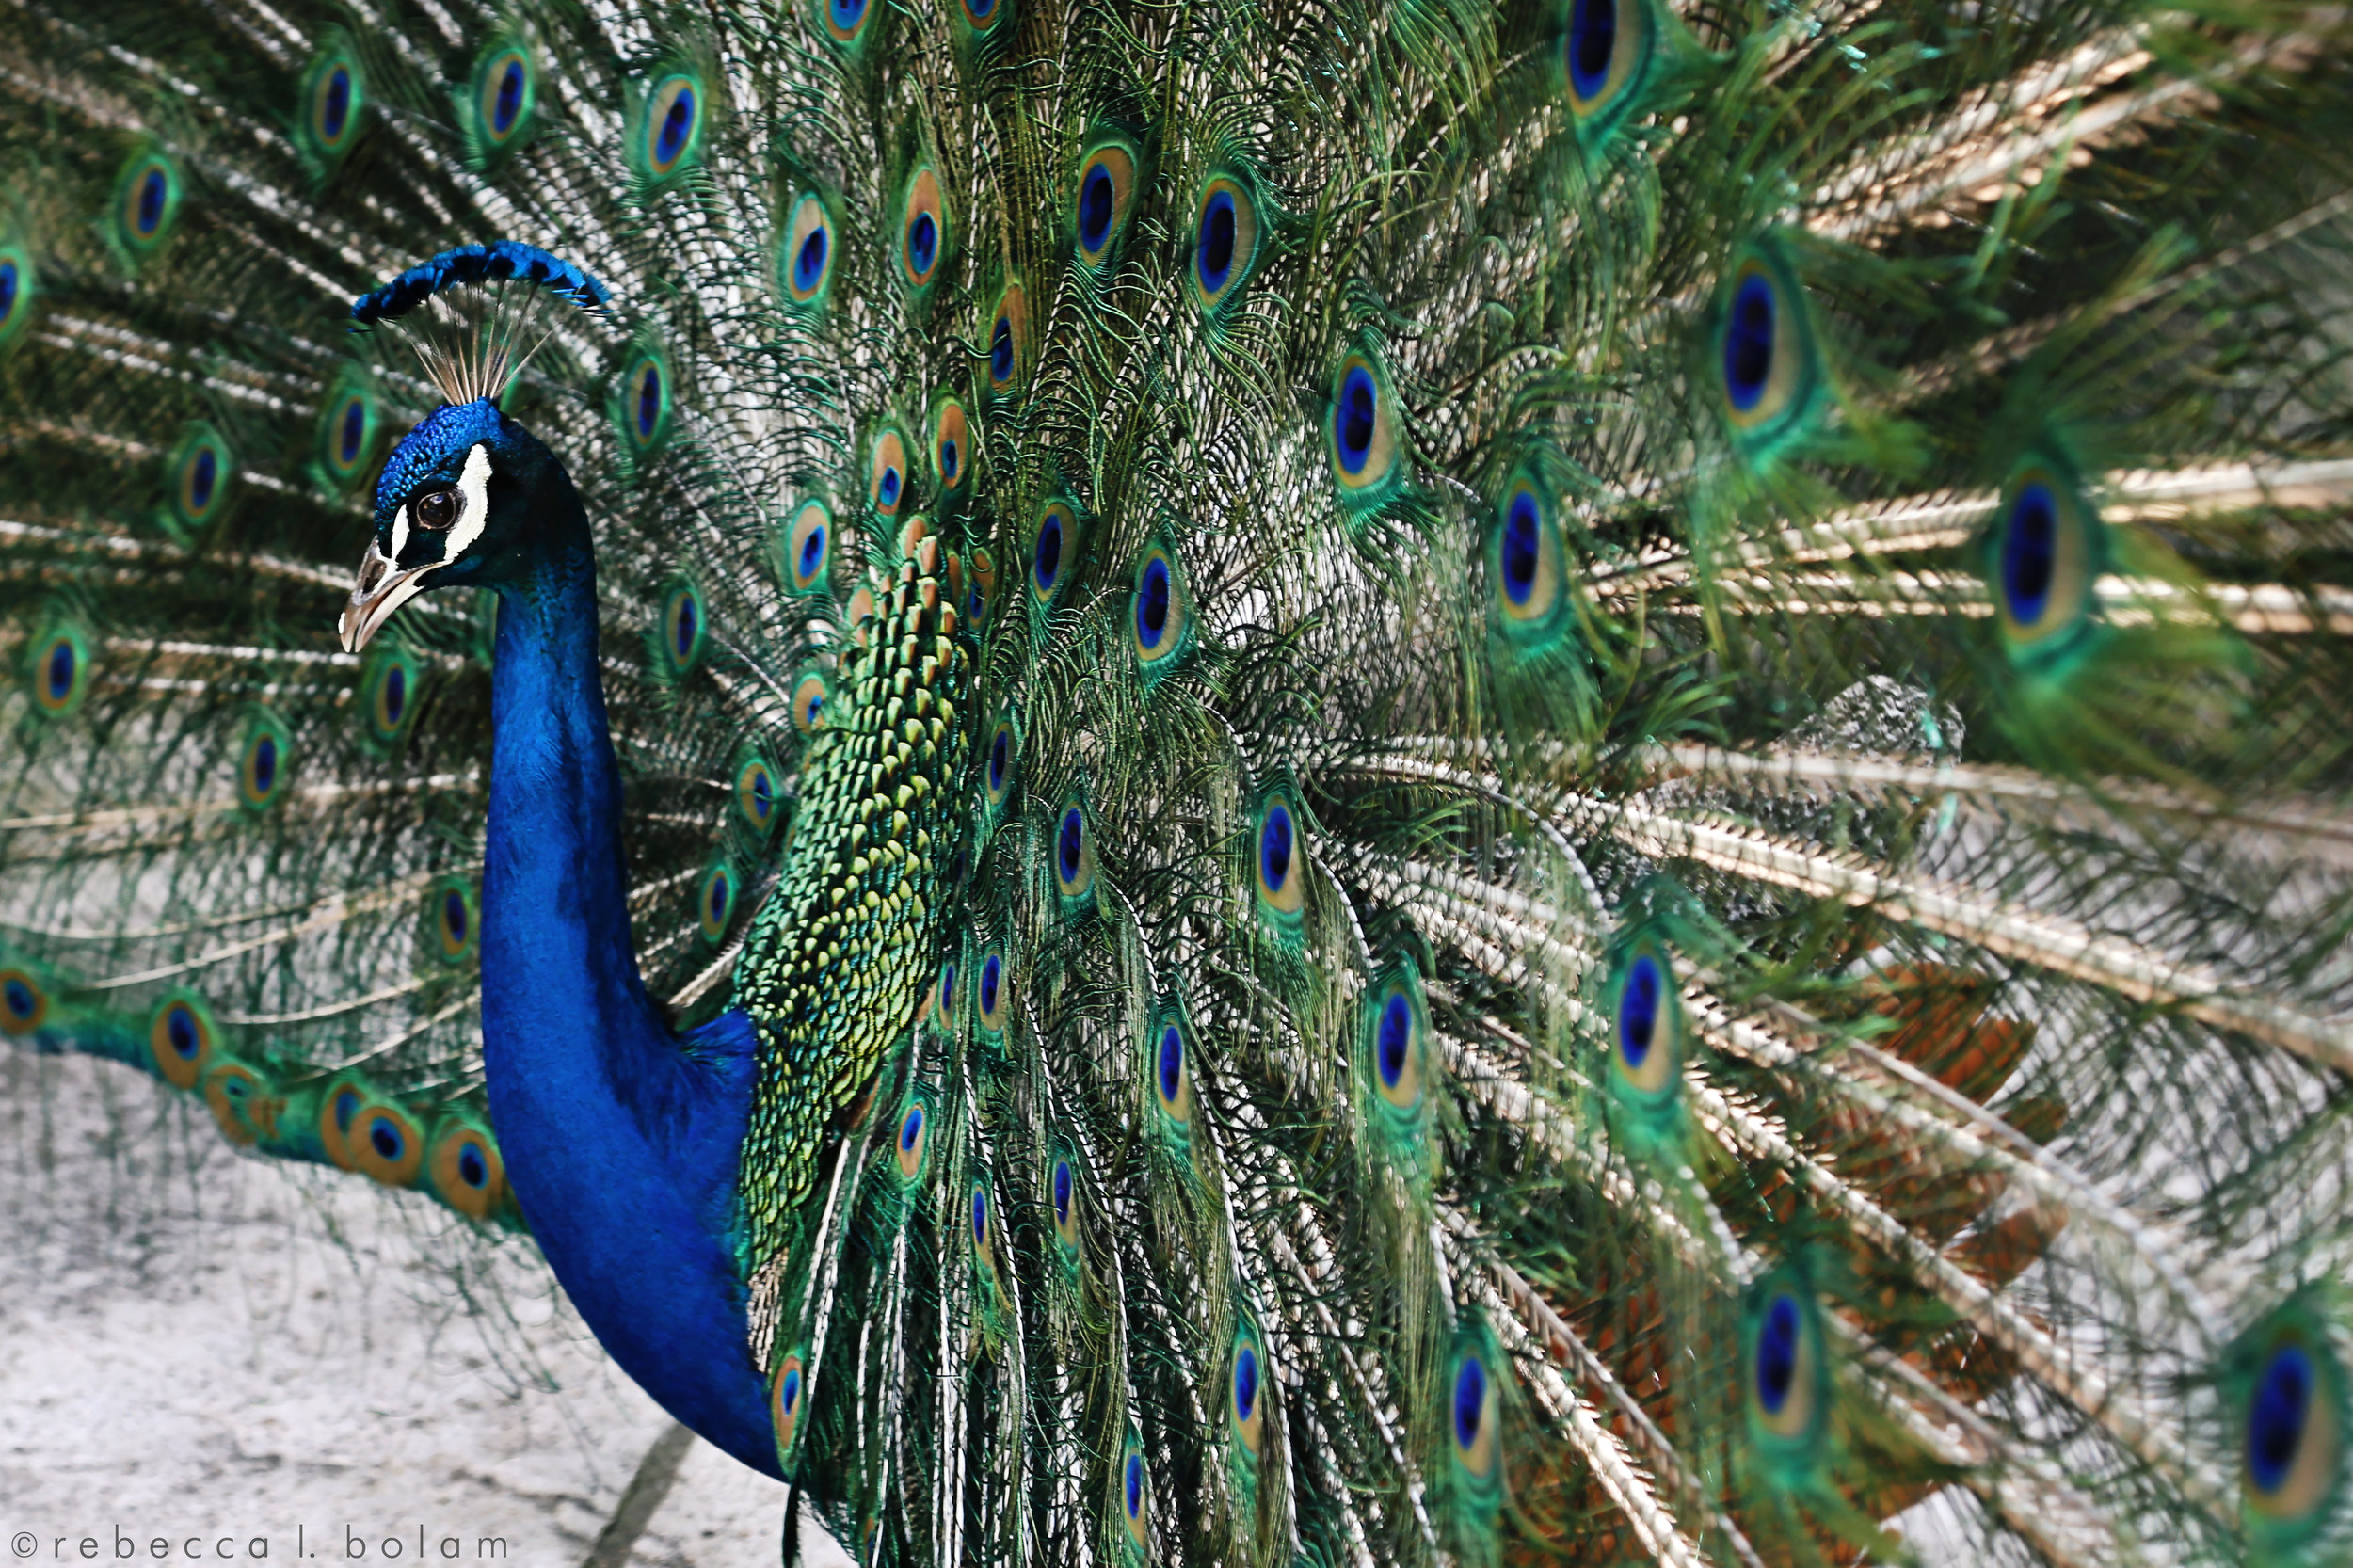 Peacock April 2017.jpg